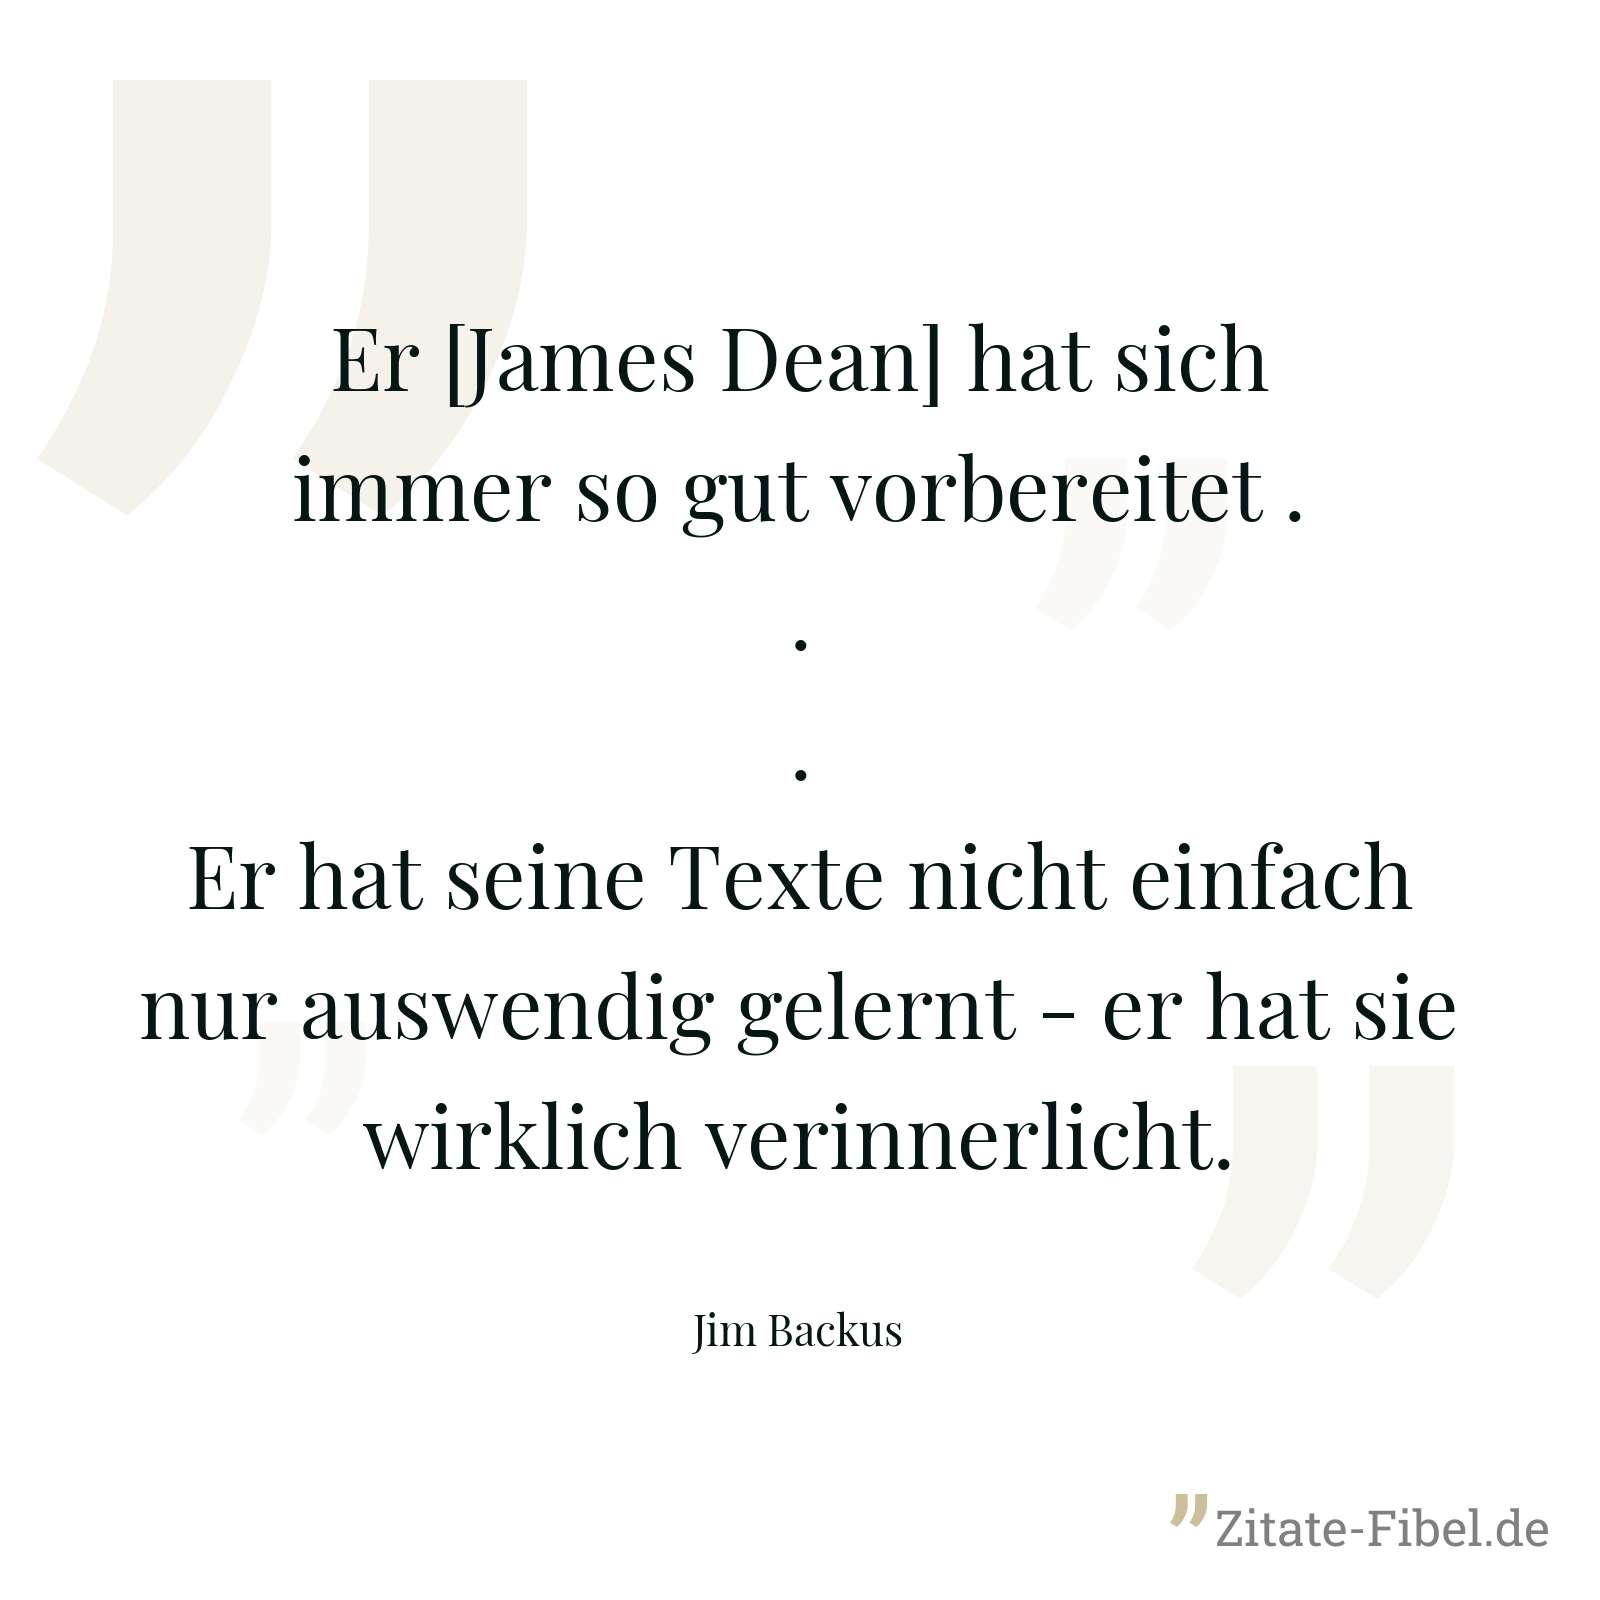 Er [James Dean] hat sich immer so gut vorbereitet ... Er hat seine Texte nicht einfach nur auswendig gelernt - er hat sie wirklich verinnerlicht. - Jim Backus